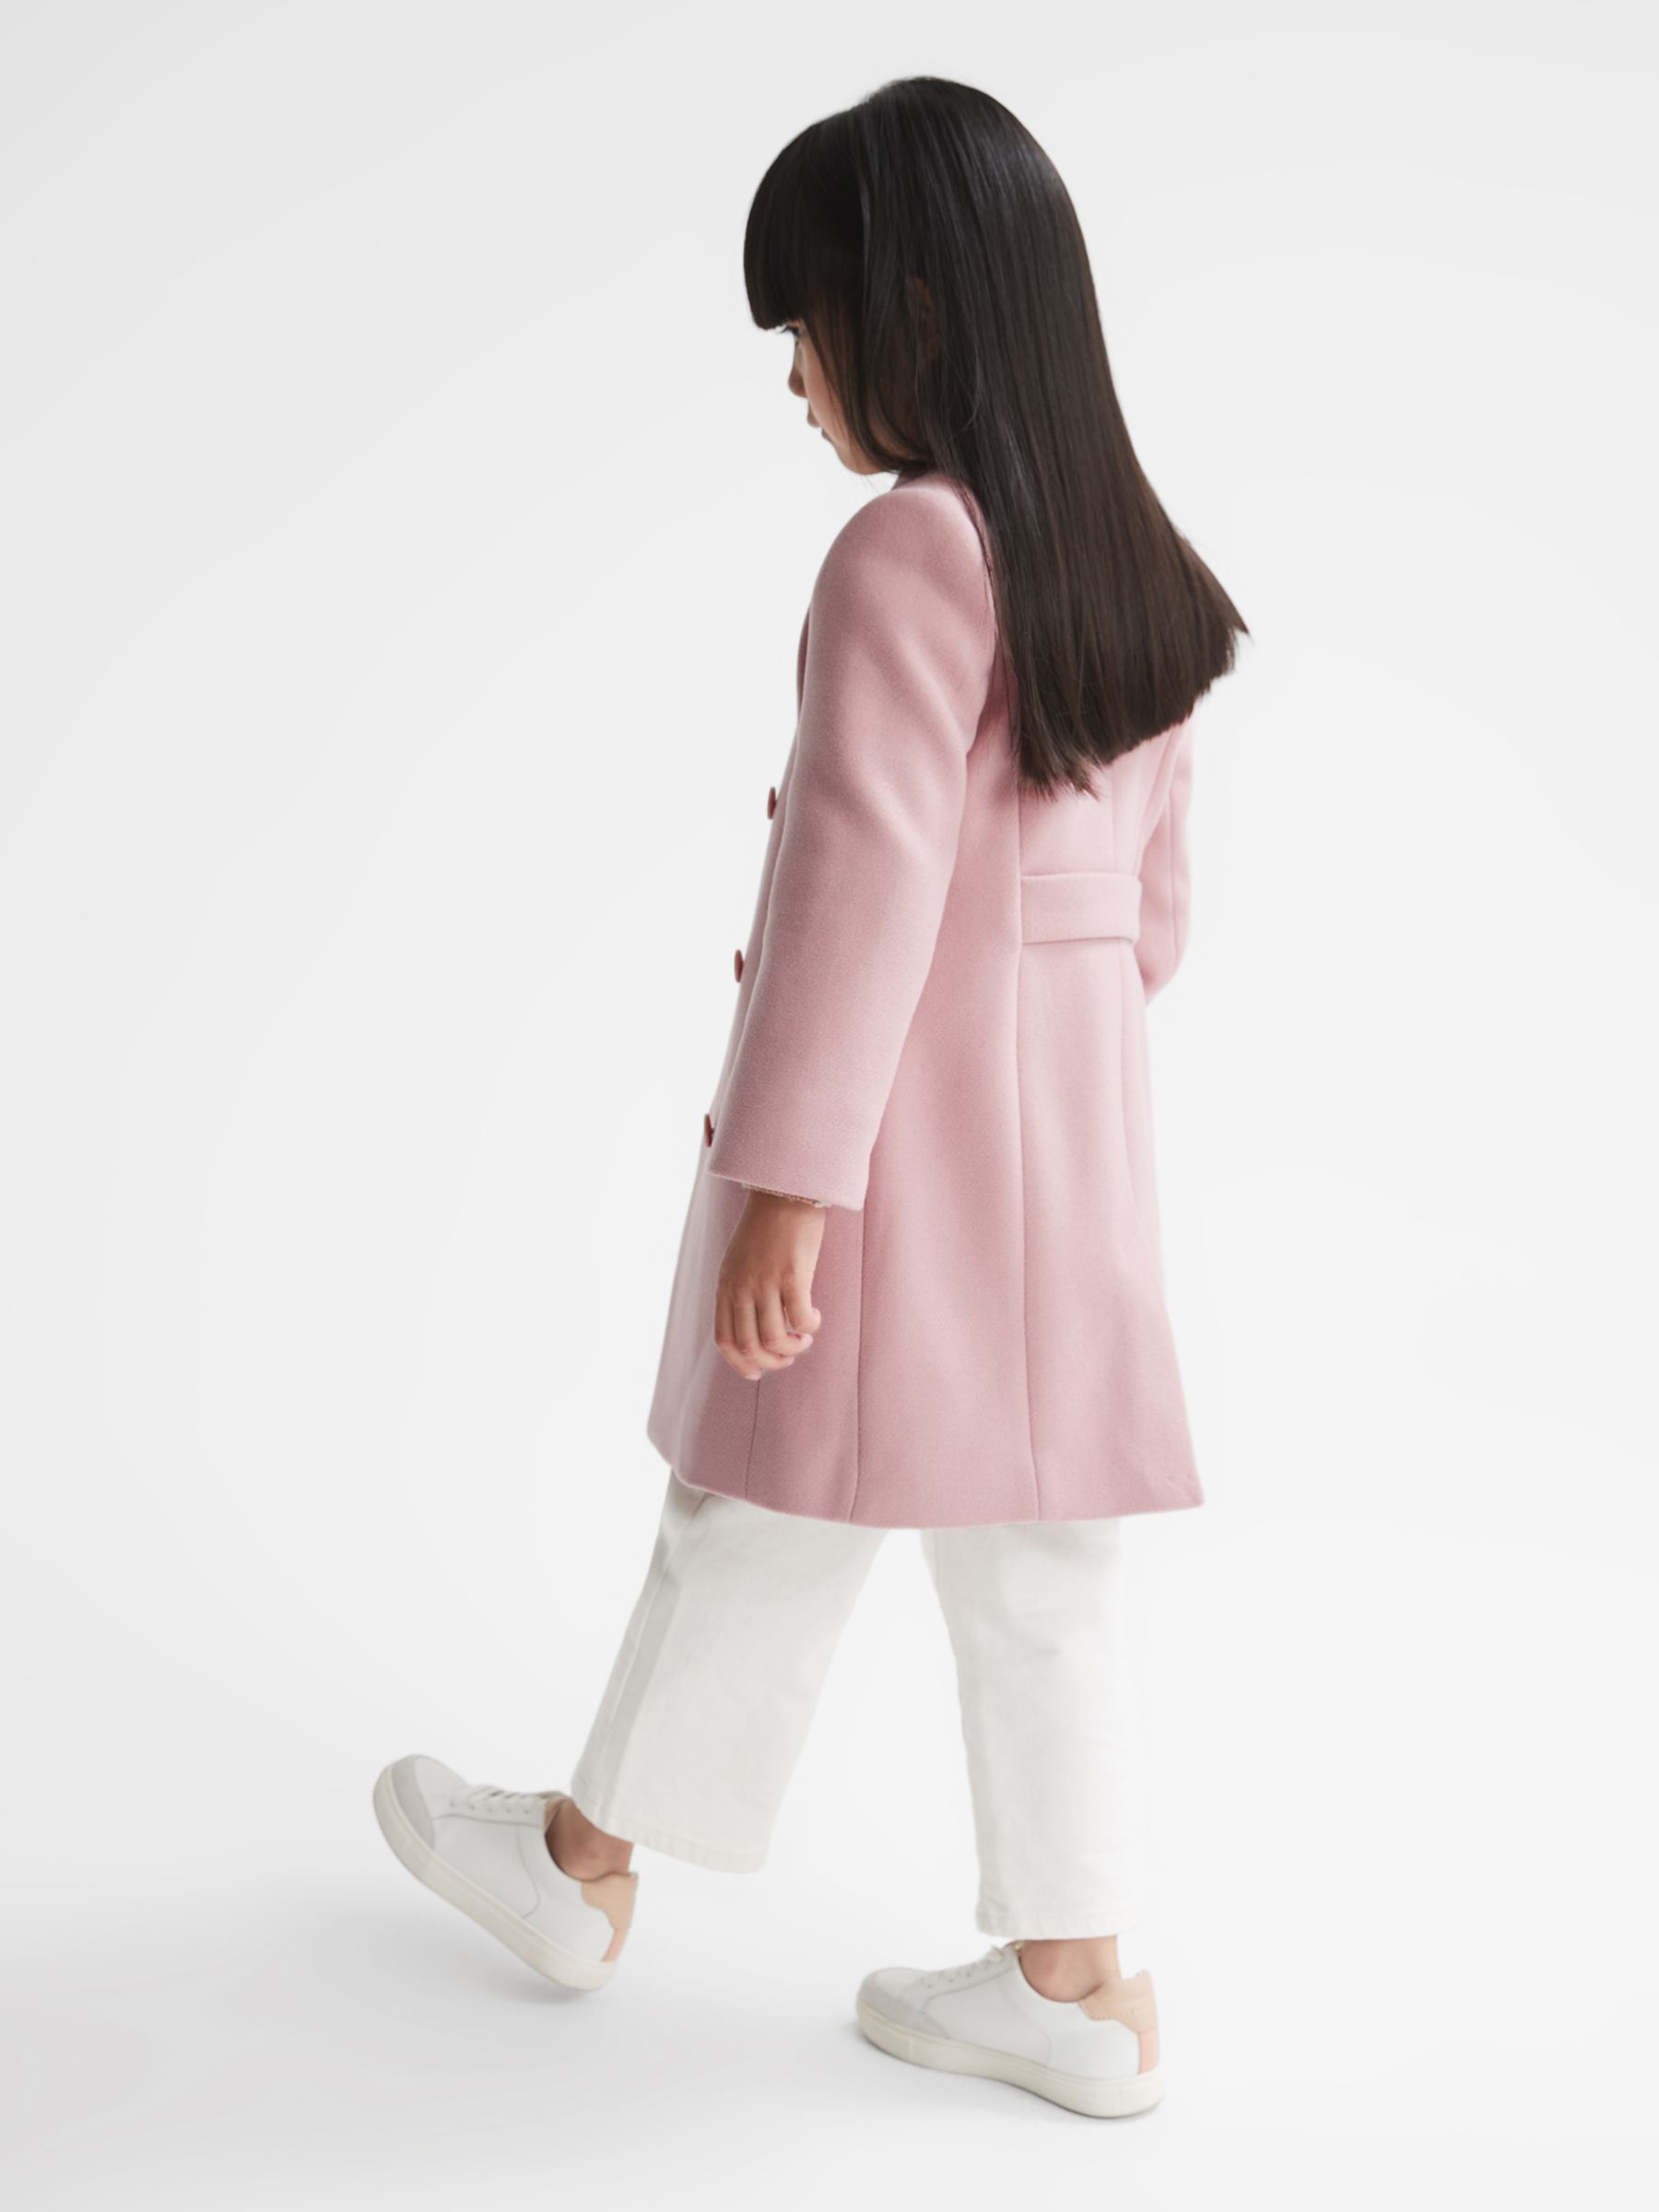 Buy Reiss Kids' Kia Wool Blend Coat, Pink Online at johnlewis.com